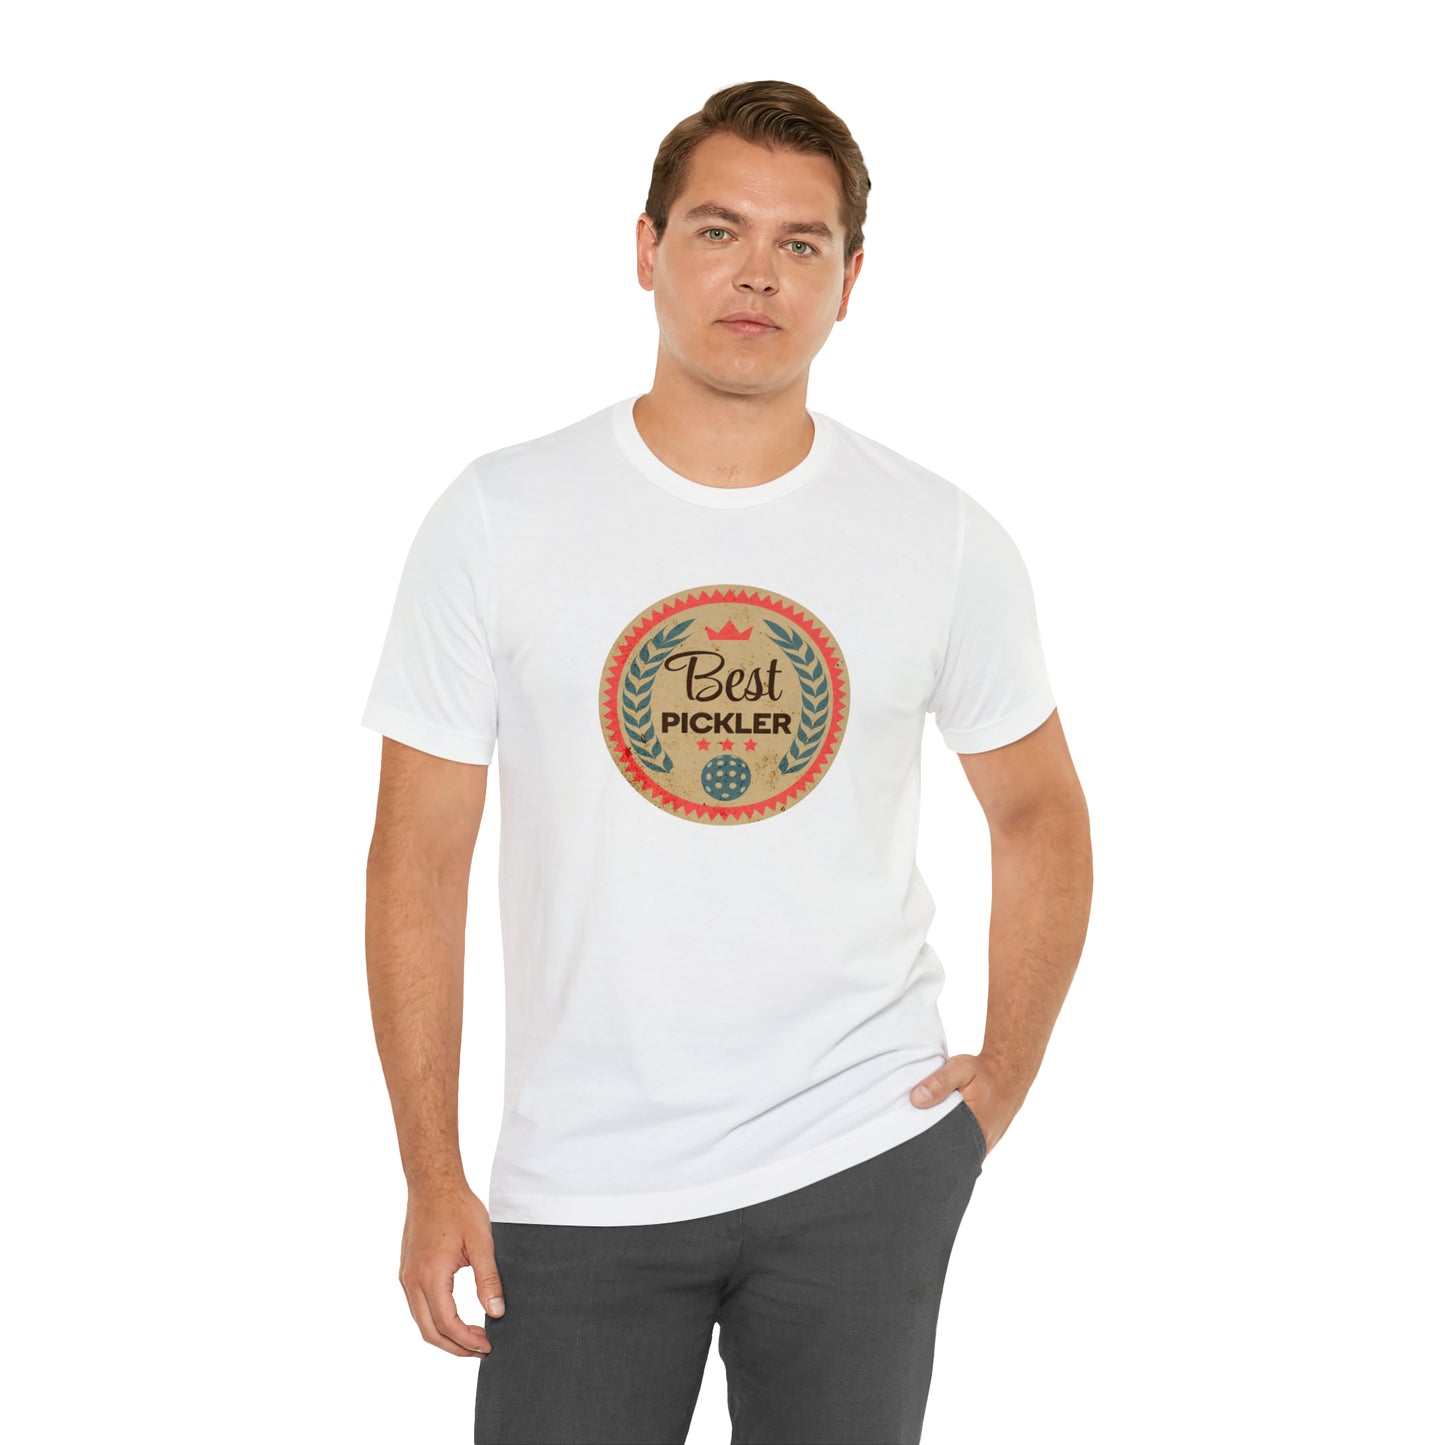 Best Pickler - Unisex Cotton T-Shirt for Pickleball Lovers